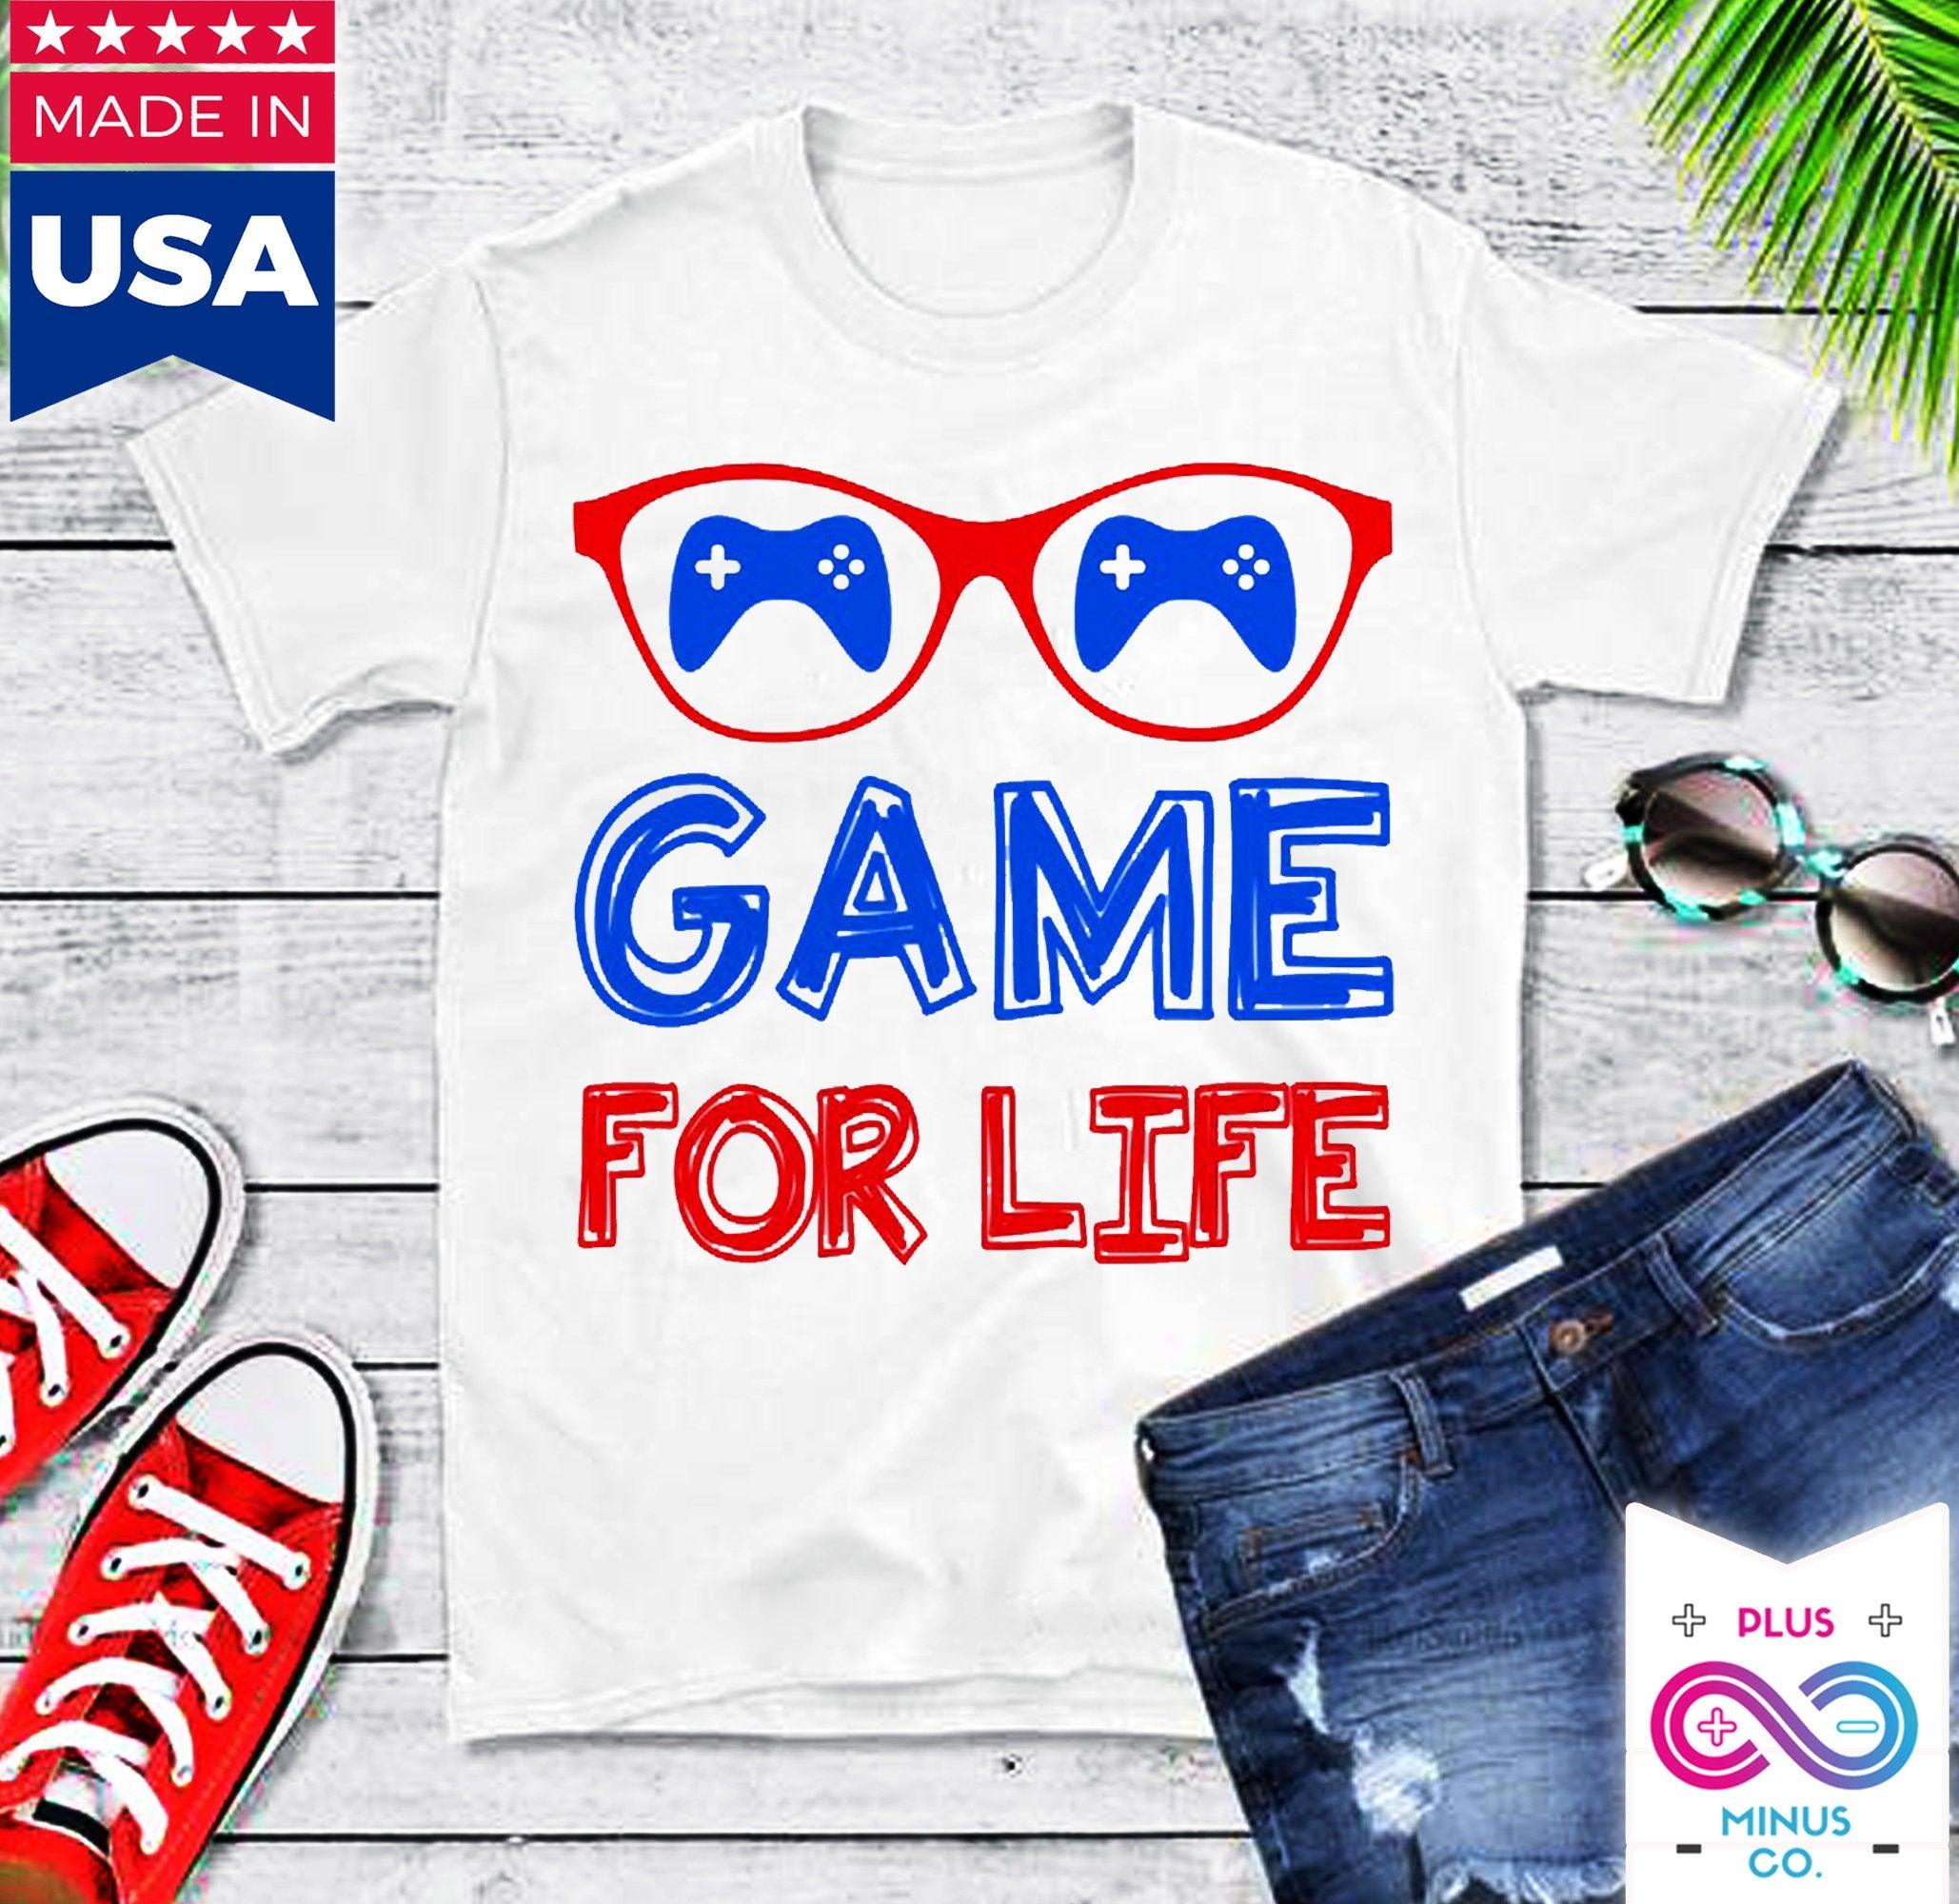 평생 티셔츠를 위한 게임 || 게이머 셔츠 || 게이밍 셔츠 || 게임 라이프 셔츠 || 게이머 선물 || 비디오 게임 셔츠 || 남자친구를 위한 선물 - plusminusco.com